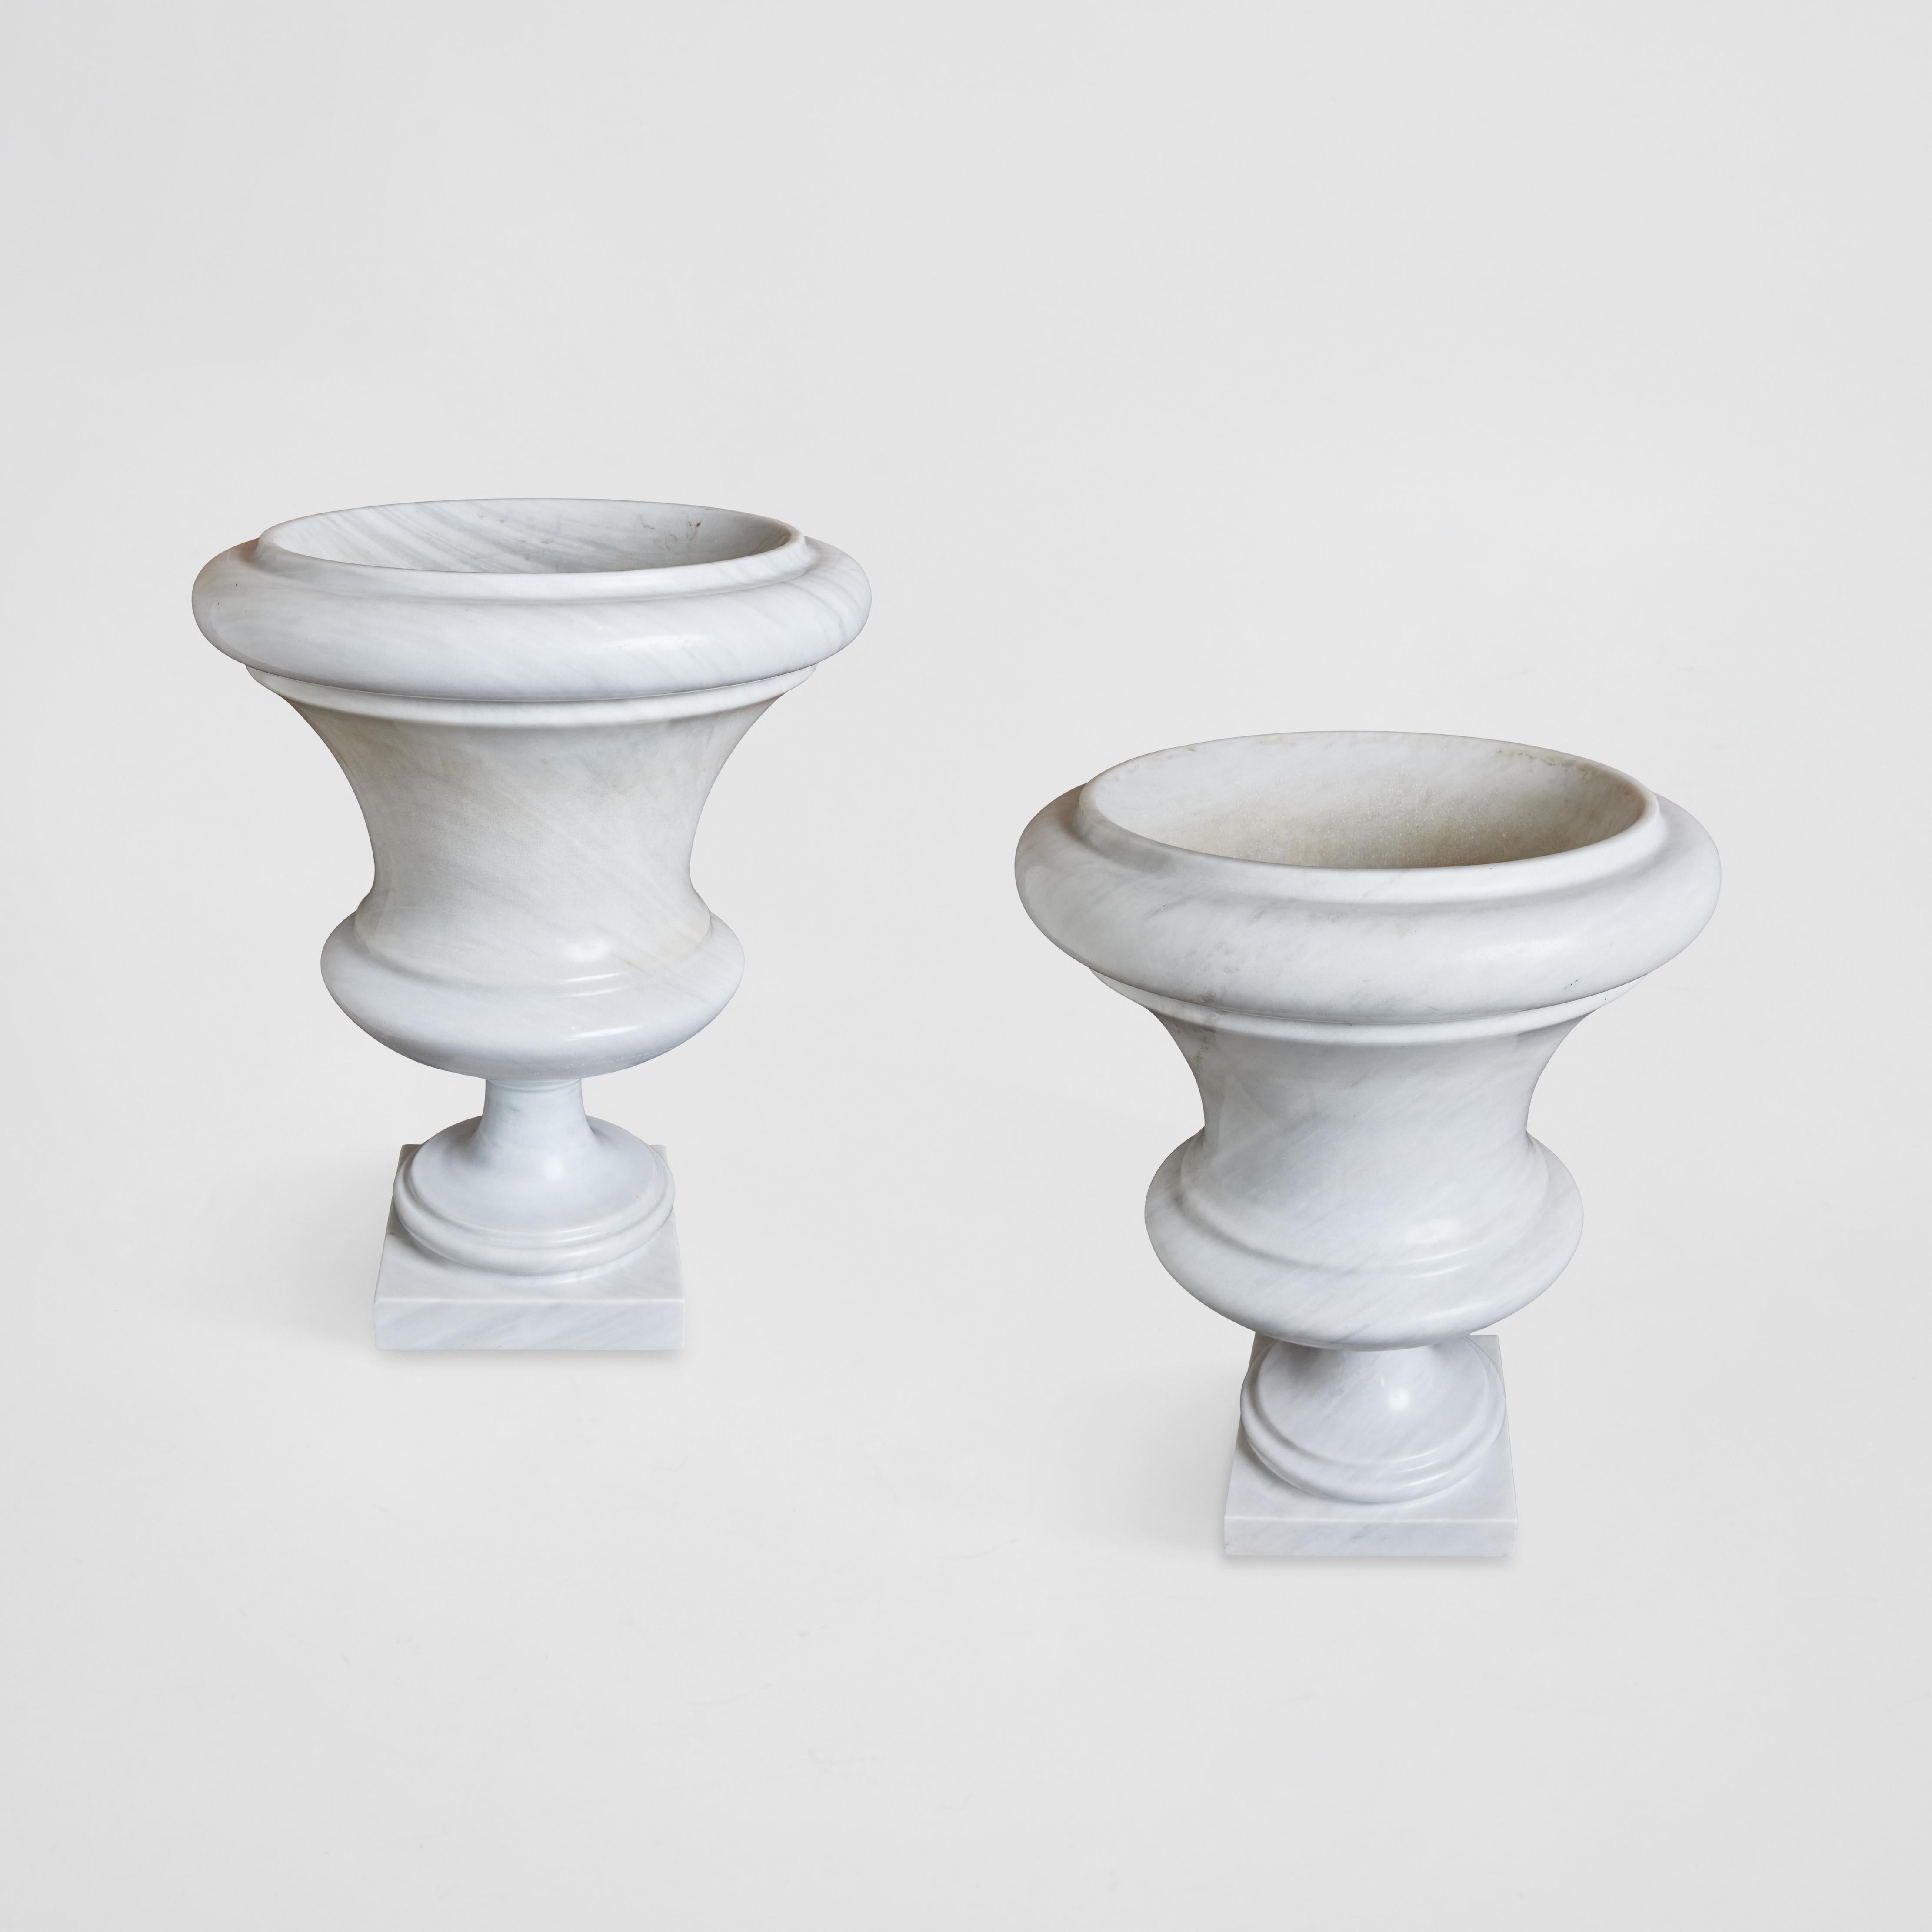 Großformatiges Paar klassischer weißer Karrara-Urnen.  Diese Urnen können sowohl für den Innen- als auch für den Außenbereich verwendet werden. Sie sind wunderschön als Solitär, gepflanzt oder mit weißen Orchideen gefüllt.